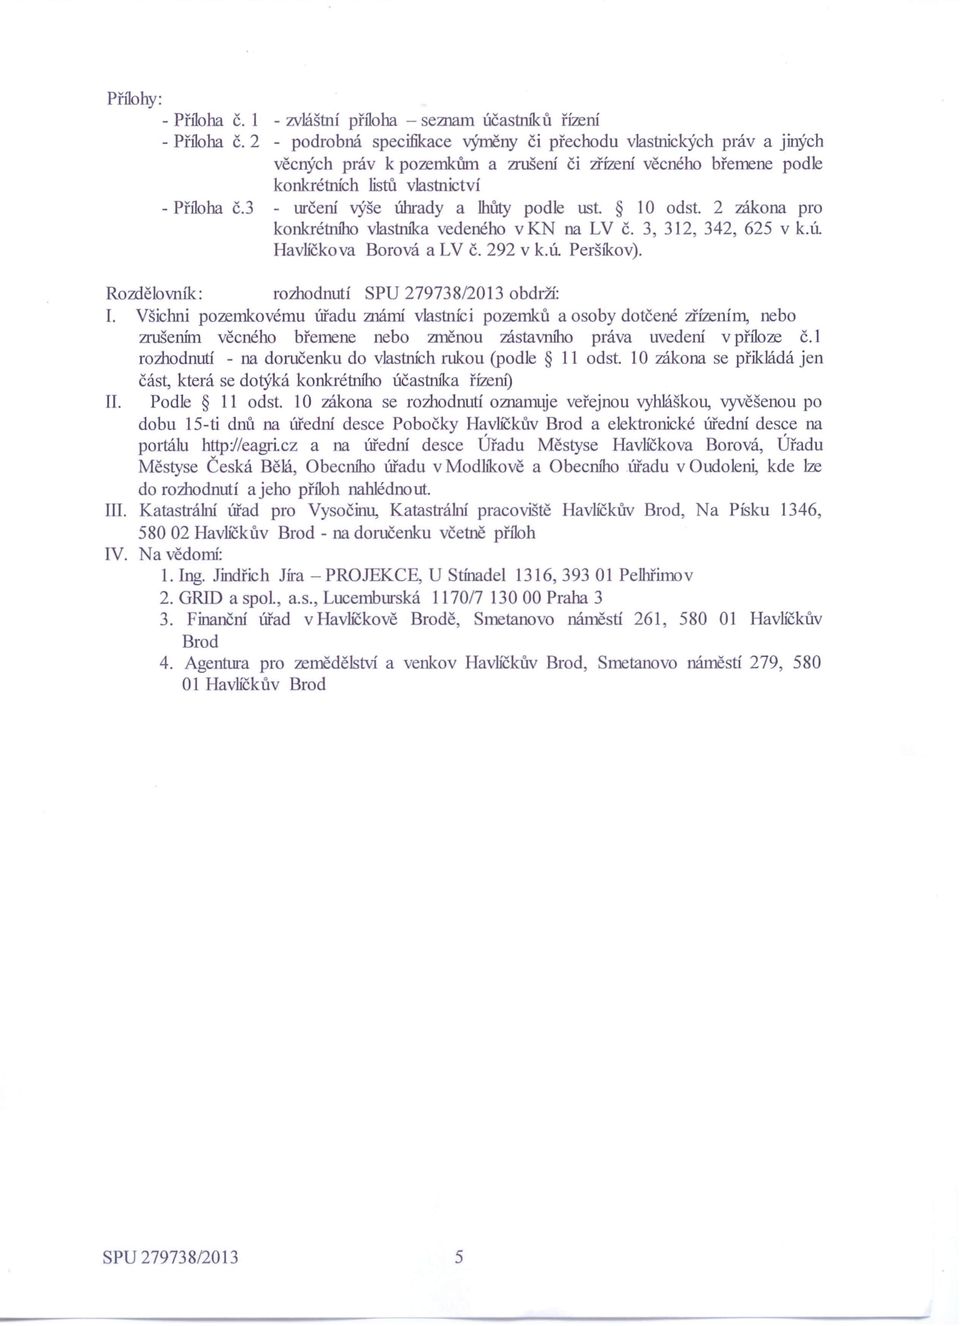 3 - určení výše úhrady a lhůty podle ust. 10 odst. 2 zákona pro konkrétního vlastníka vedeného v KN na LV č. 3, 312, 342, 625 v k.ú Havlíčkova Borová a LV č. 292 v k.ú Peršíkov).